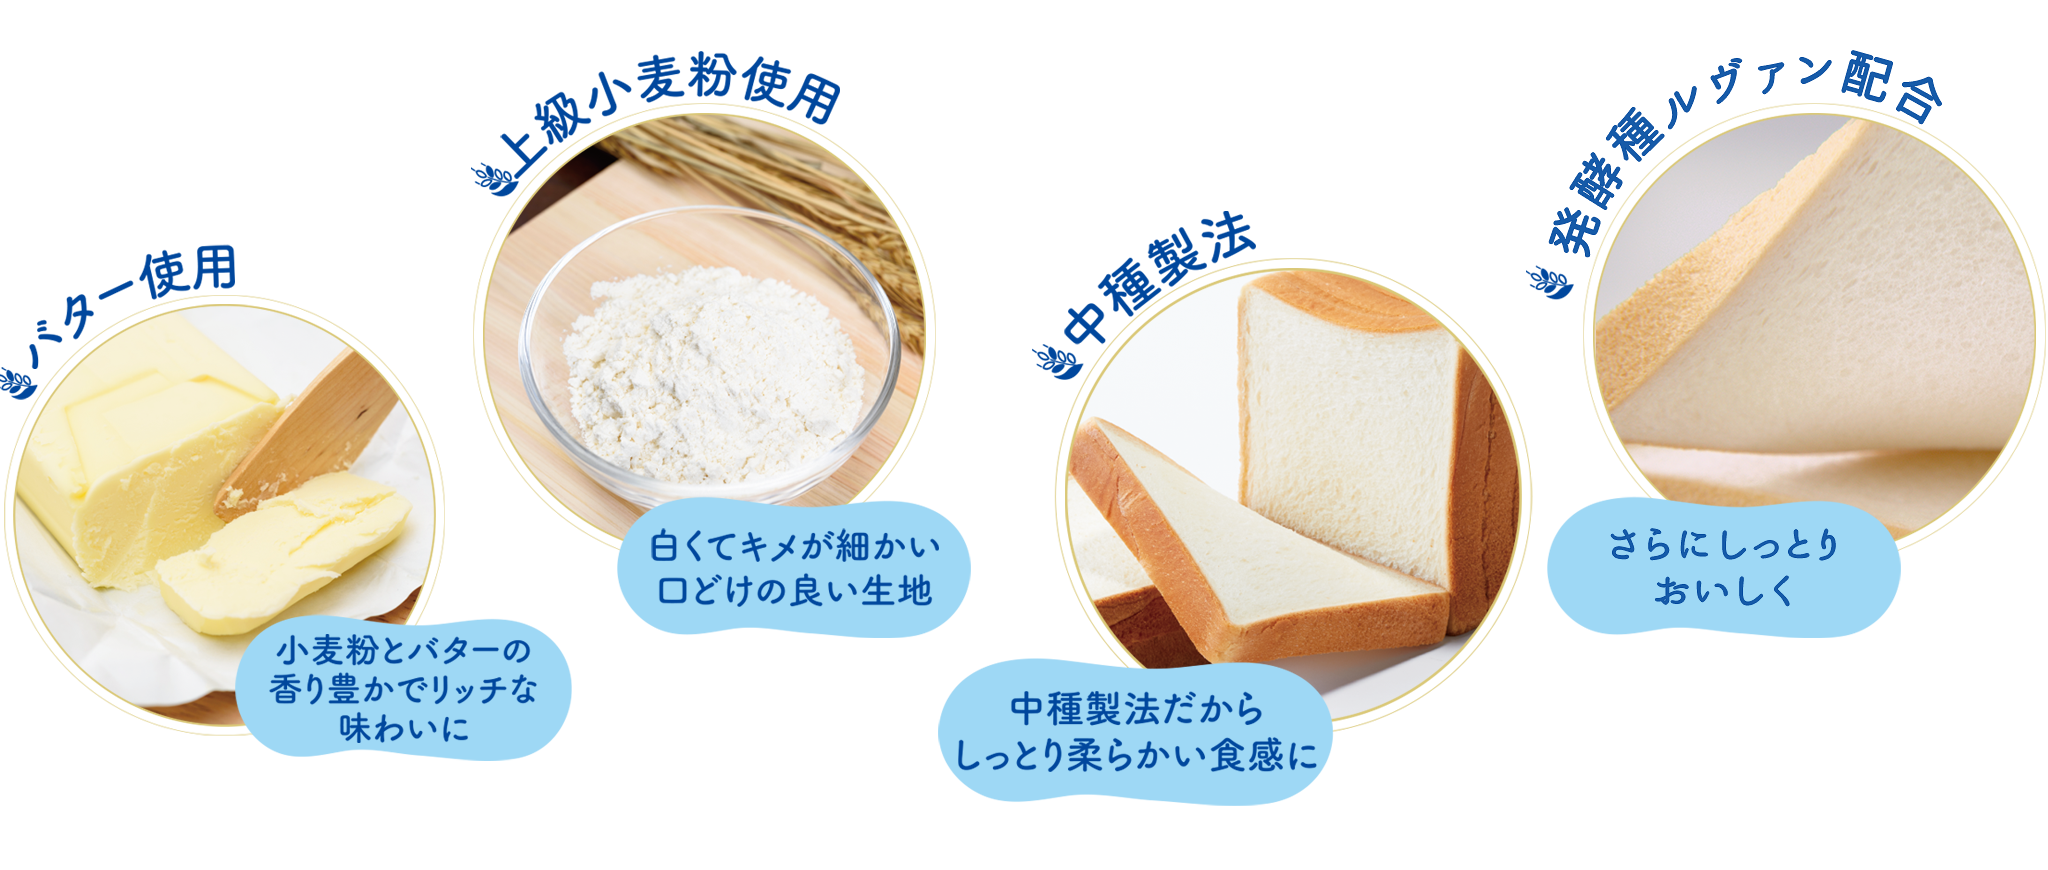 上級小麦粉使用、バター使用、中種製法 発酵種ルヴァン配合